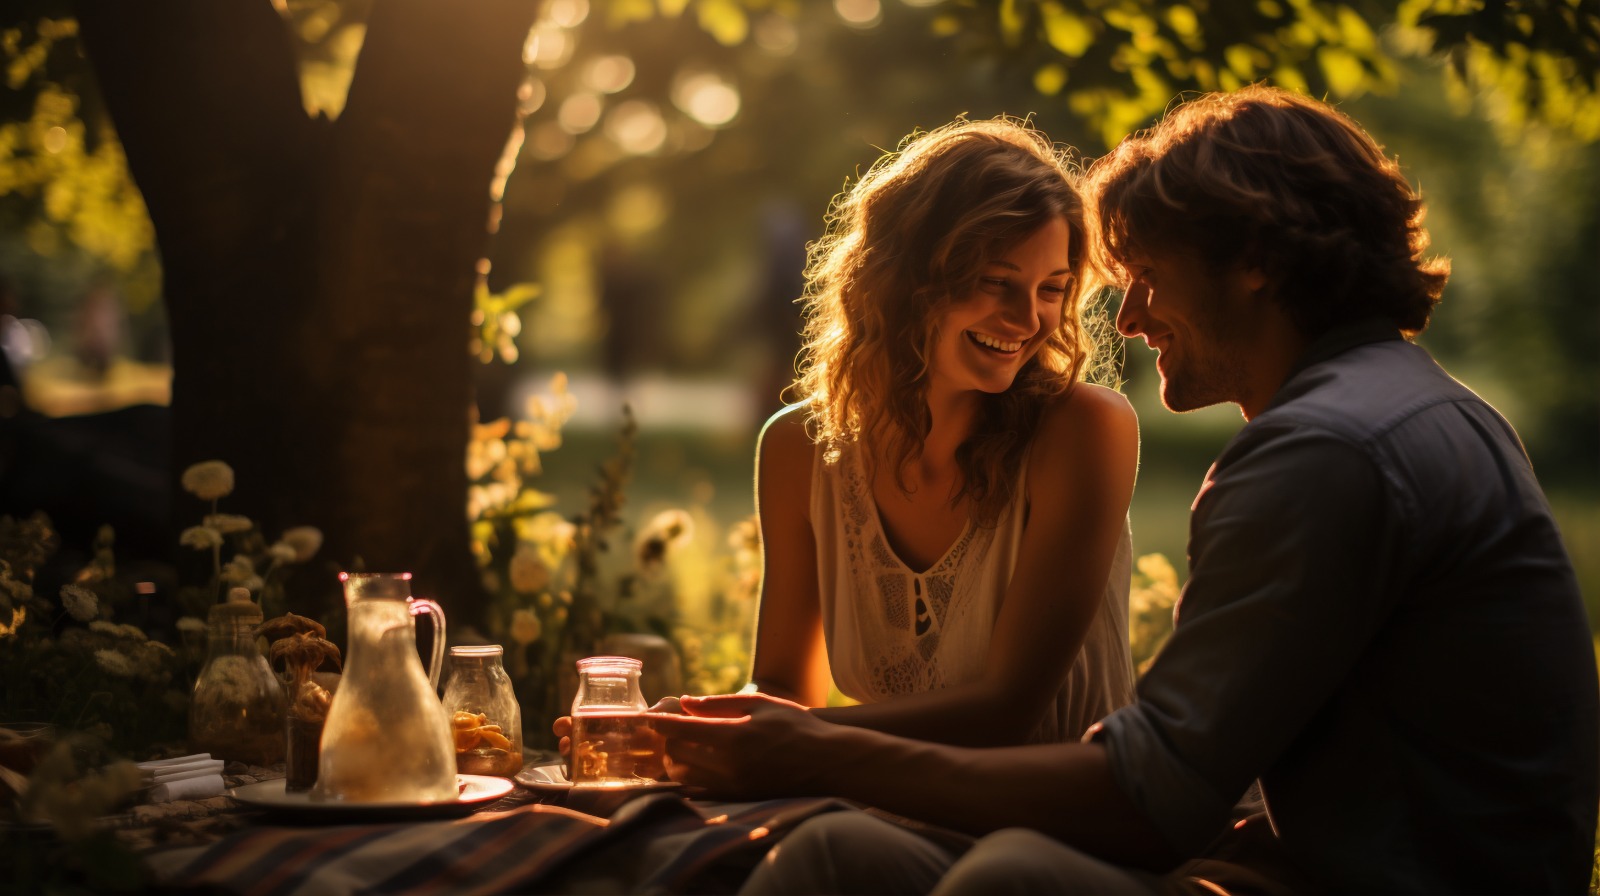 Casal feliz em um piquenique ao ar livre, cercado pela natureza e banhado pela luz dourada do sol, vivenciando o conceito de que ‘casais inteligentes enriquecem juntos’.”